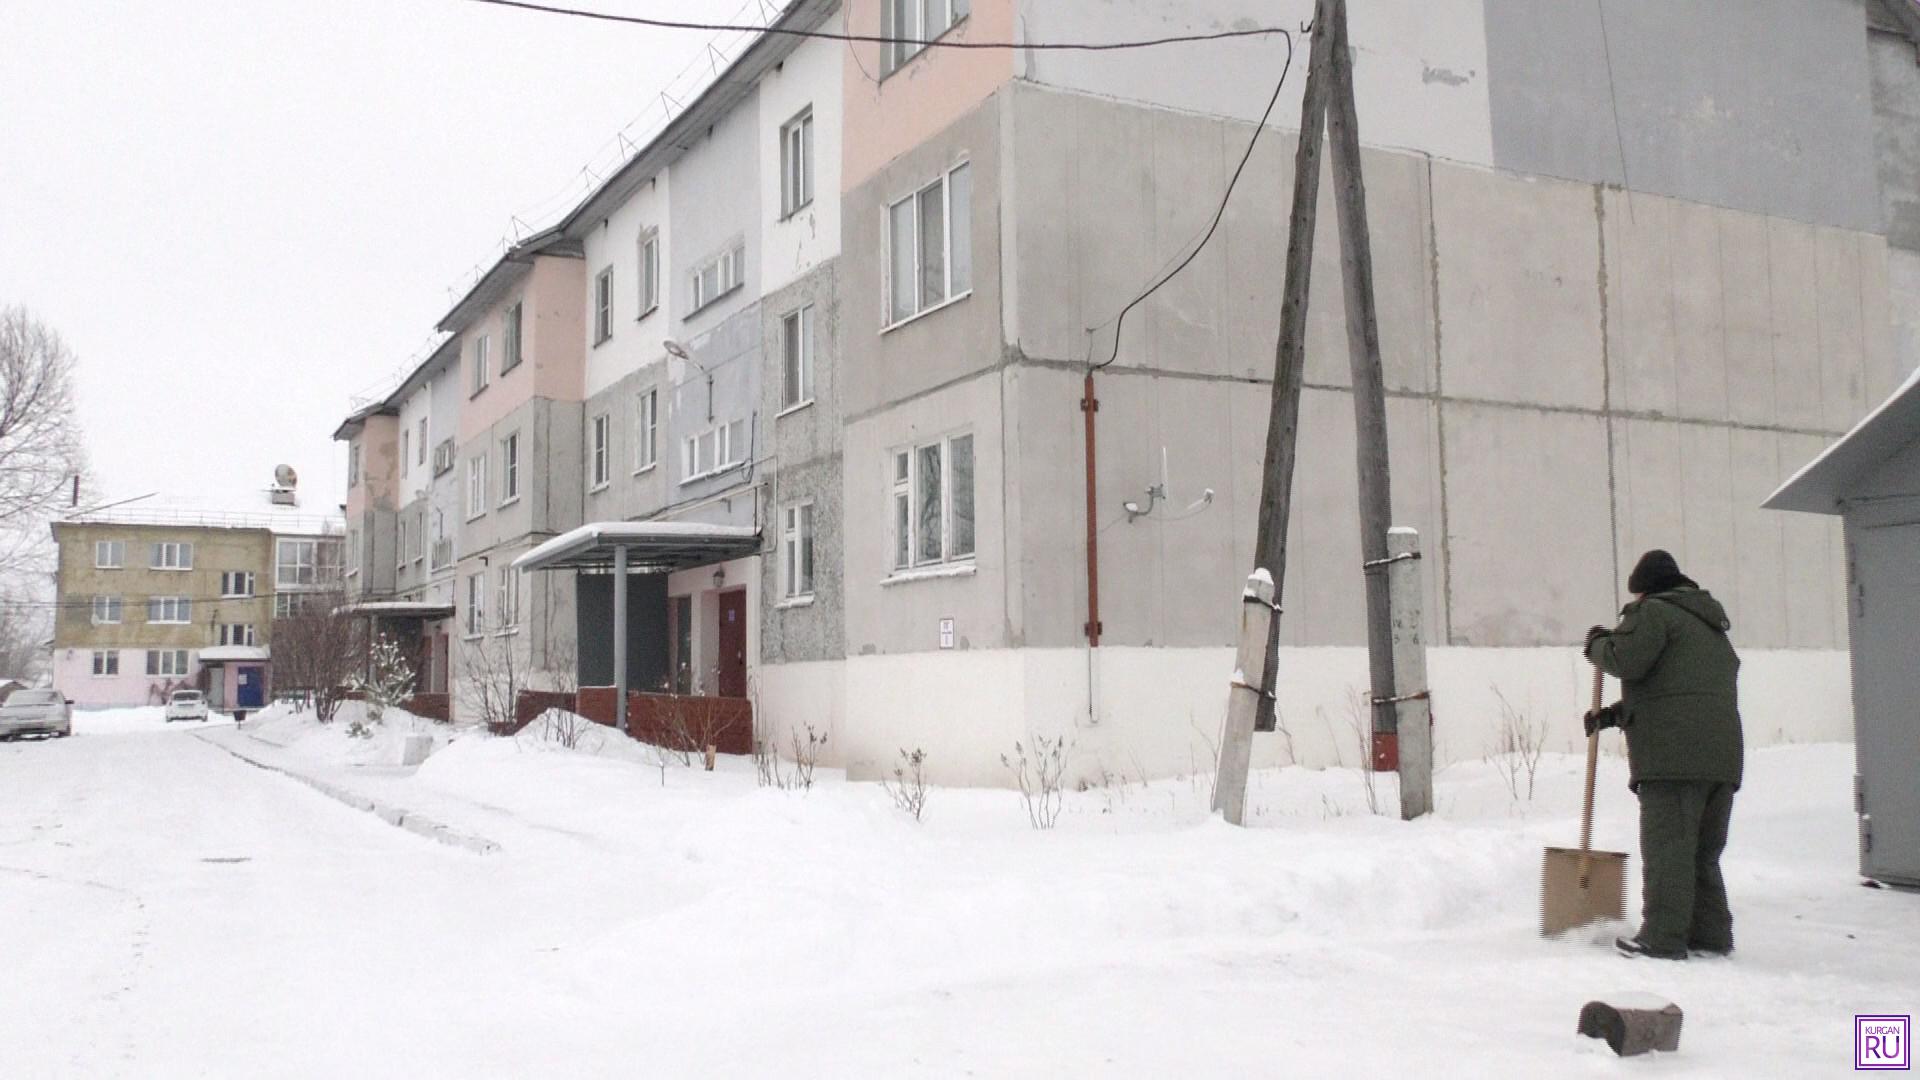 Жители Юргамыша говорят, что после прихода инвестора забыли, каково это — замерзать зимою. Фото Информационного агентства «KURGAN.RU».